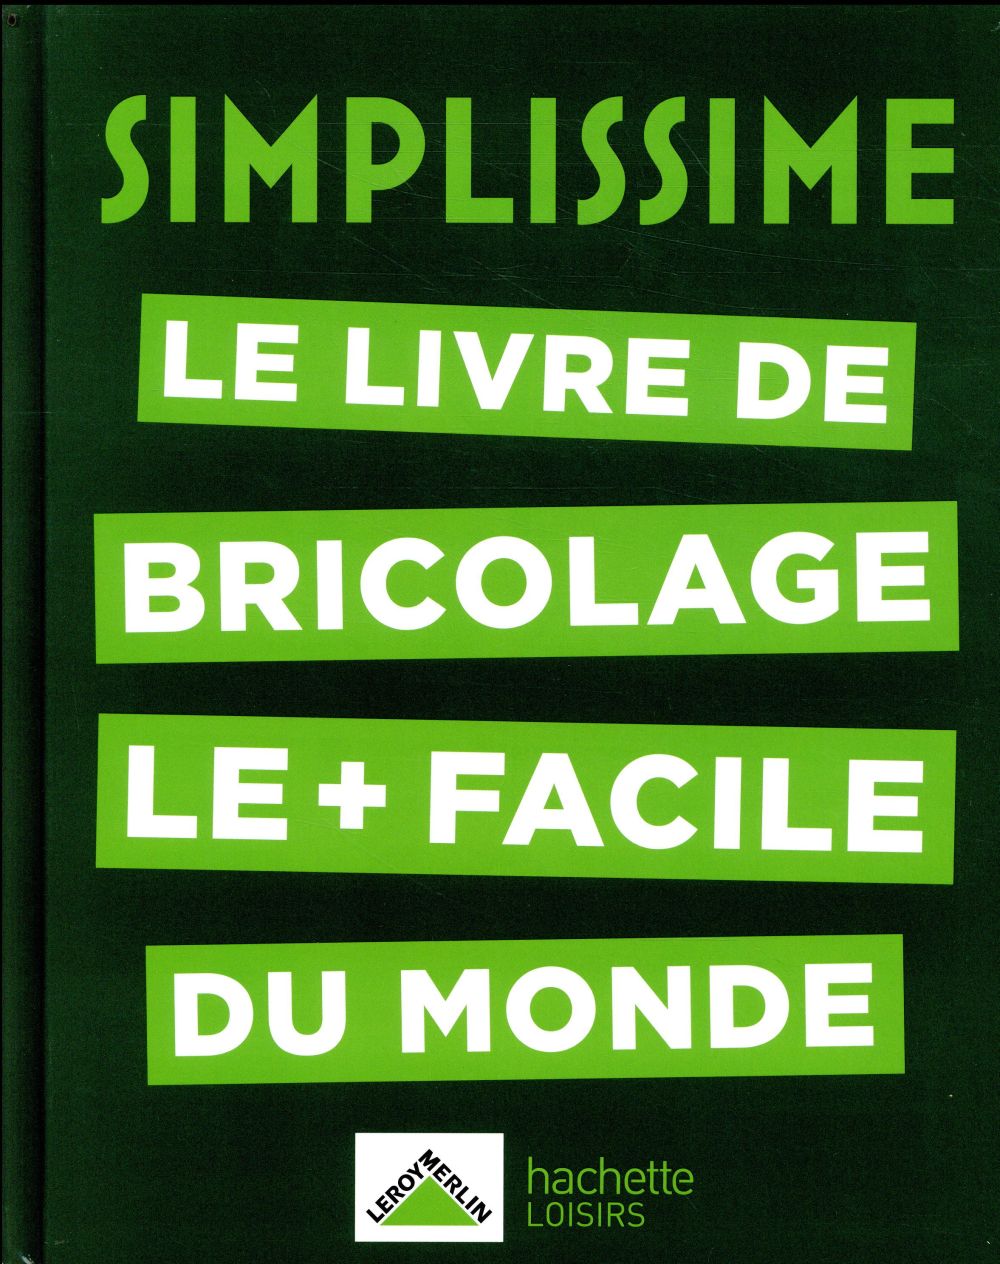 SIMPLISSIME - BRICOLAGE - LE LIVRE DE BRICOLAGE LE + FACILE DU MONDE